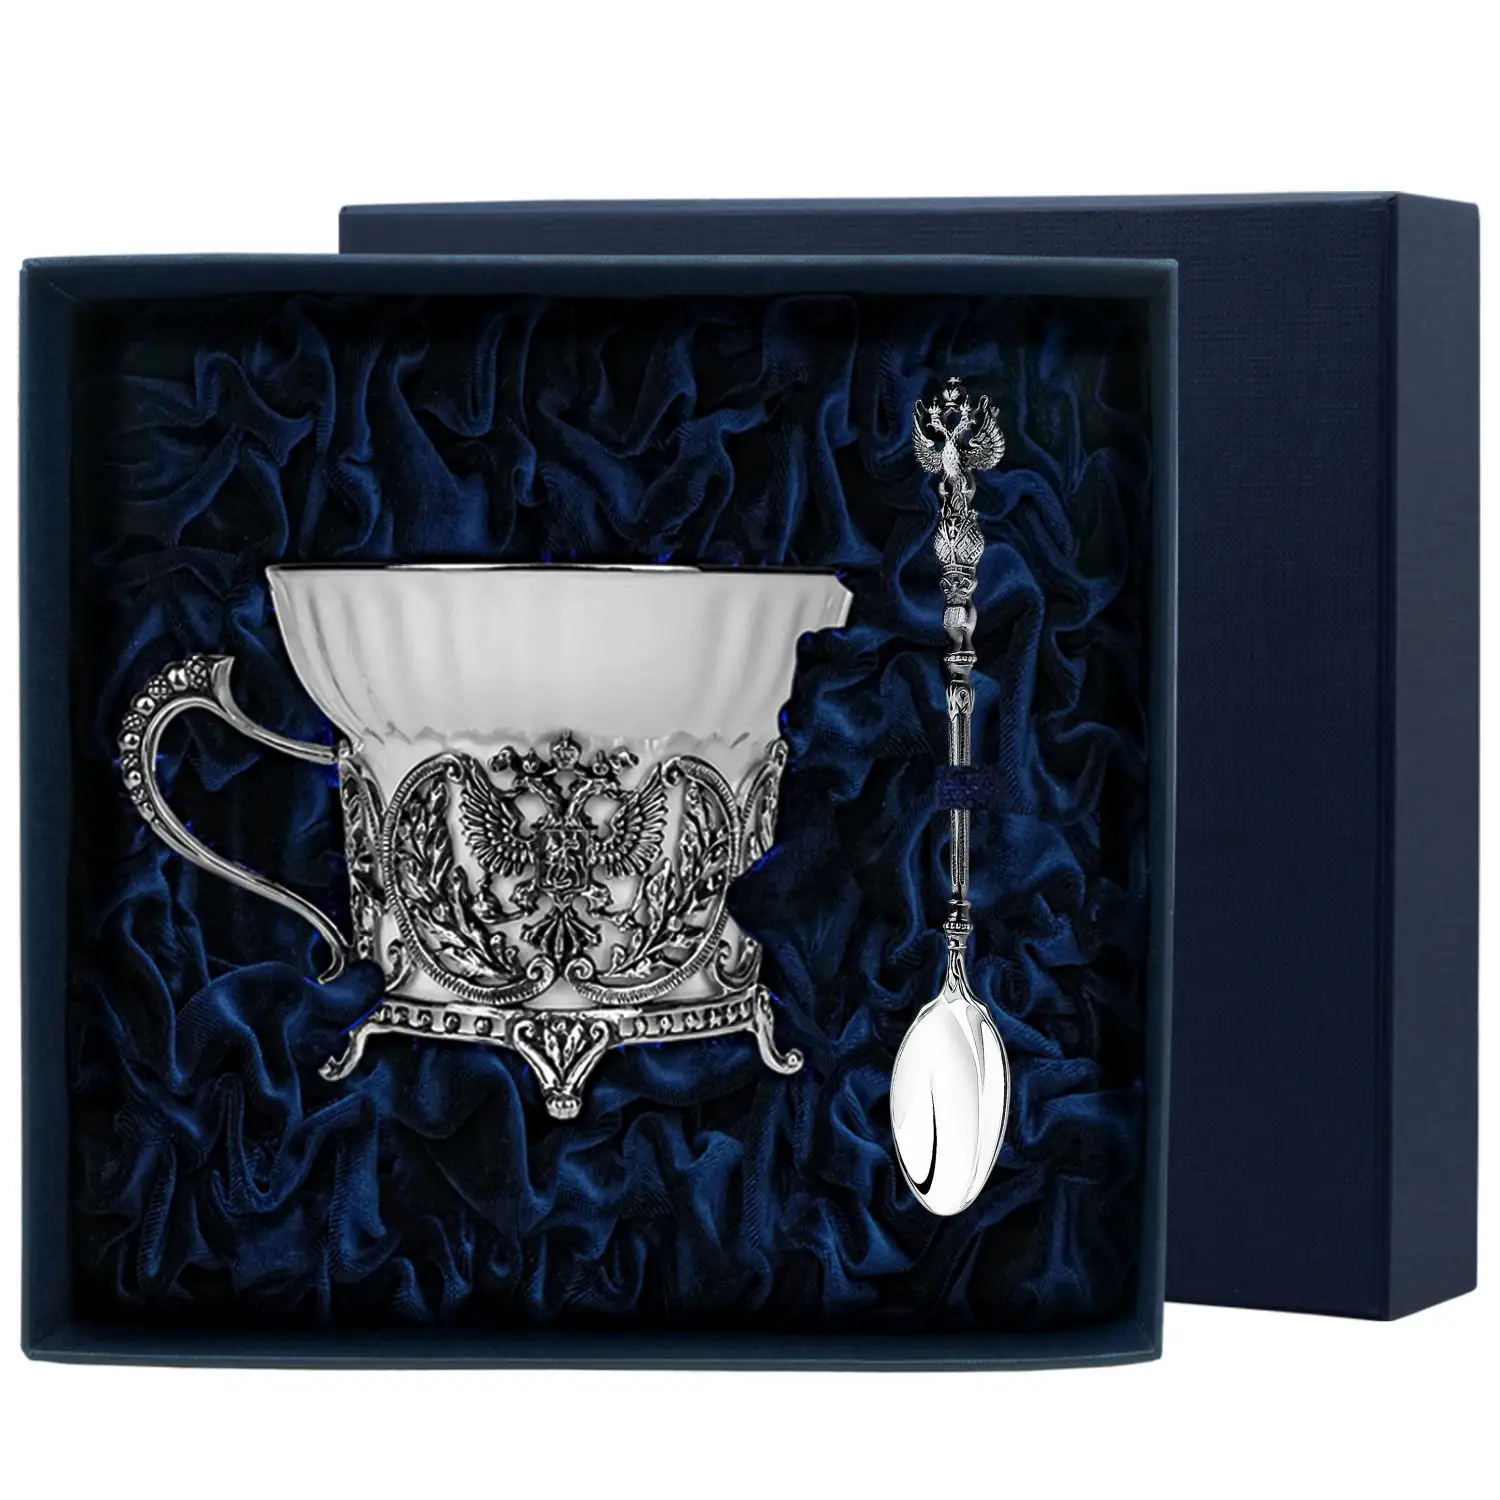 Набор чайная чашка Герб: ложка, чашка (Серебро 925) набор чайная чашка санкт петербург ложка чашка серебро 925